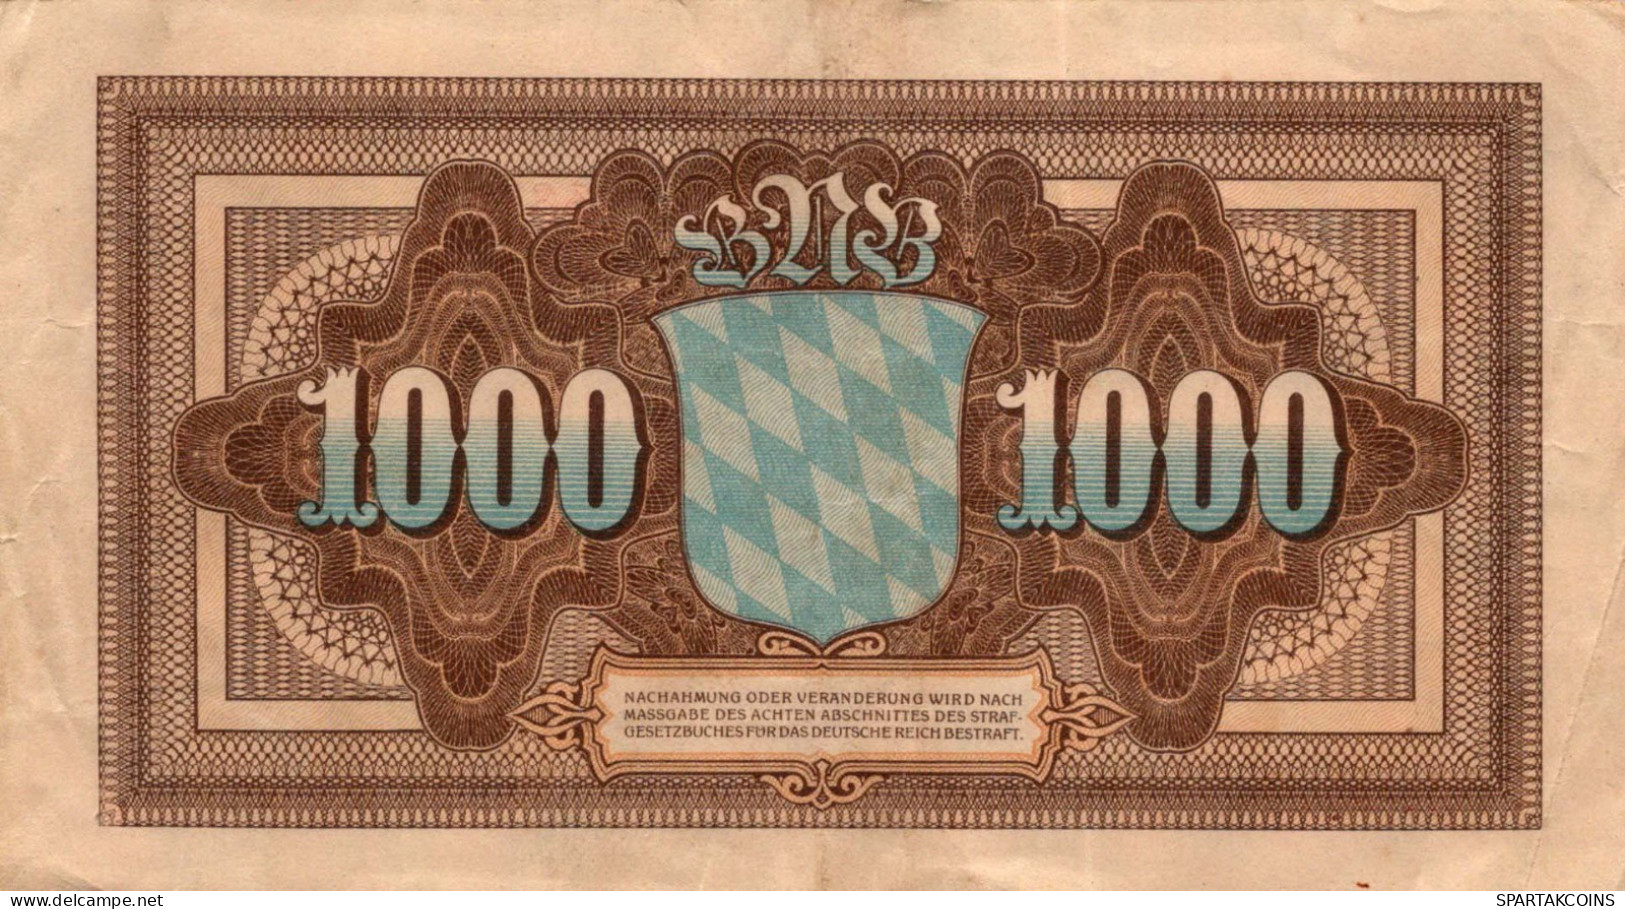 1000 MARK 1922 Stadt BAVARIA Bavaria DEUTSCHLAND Notgeld Papiergeld Banknote #PK817 - [11] Local Banknote Issues